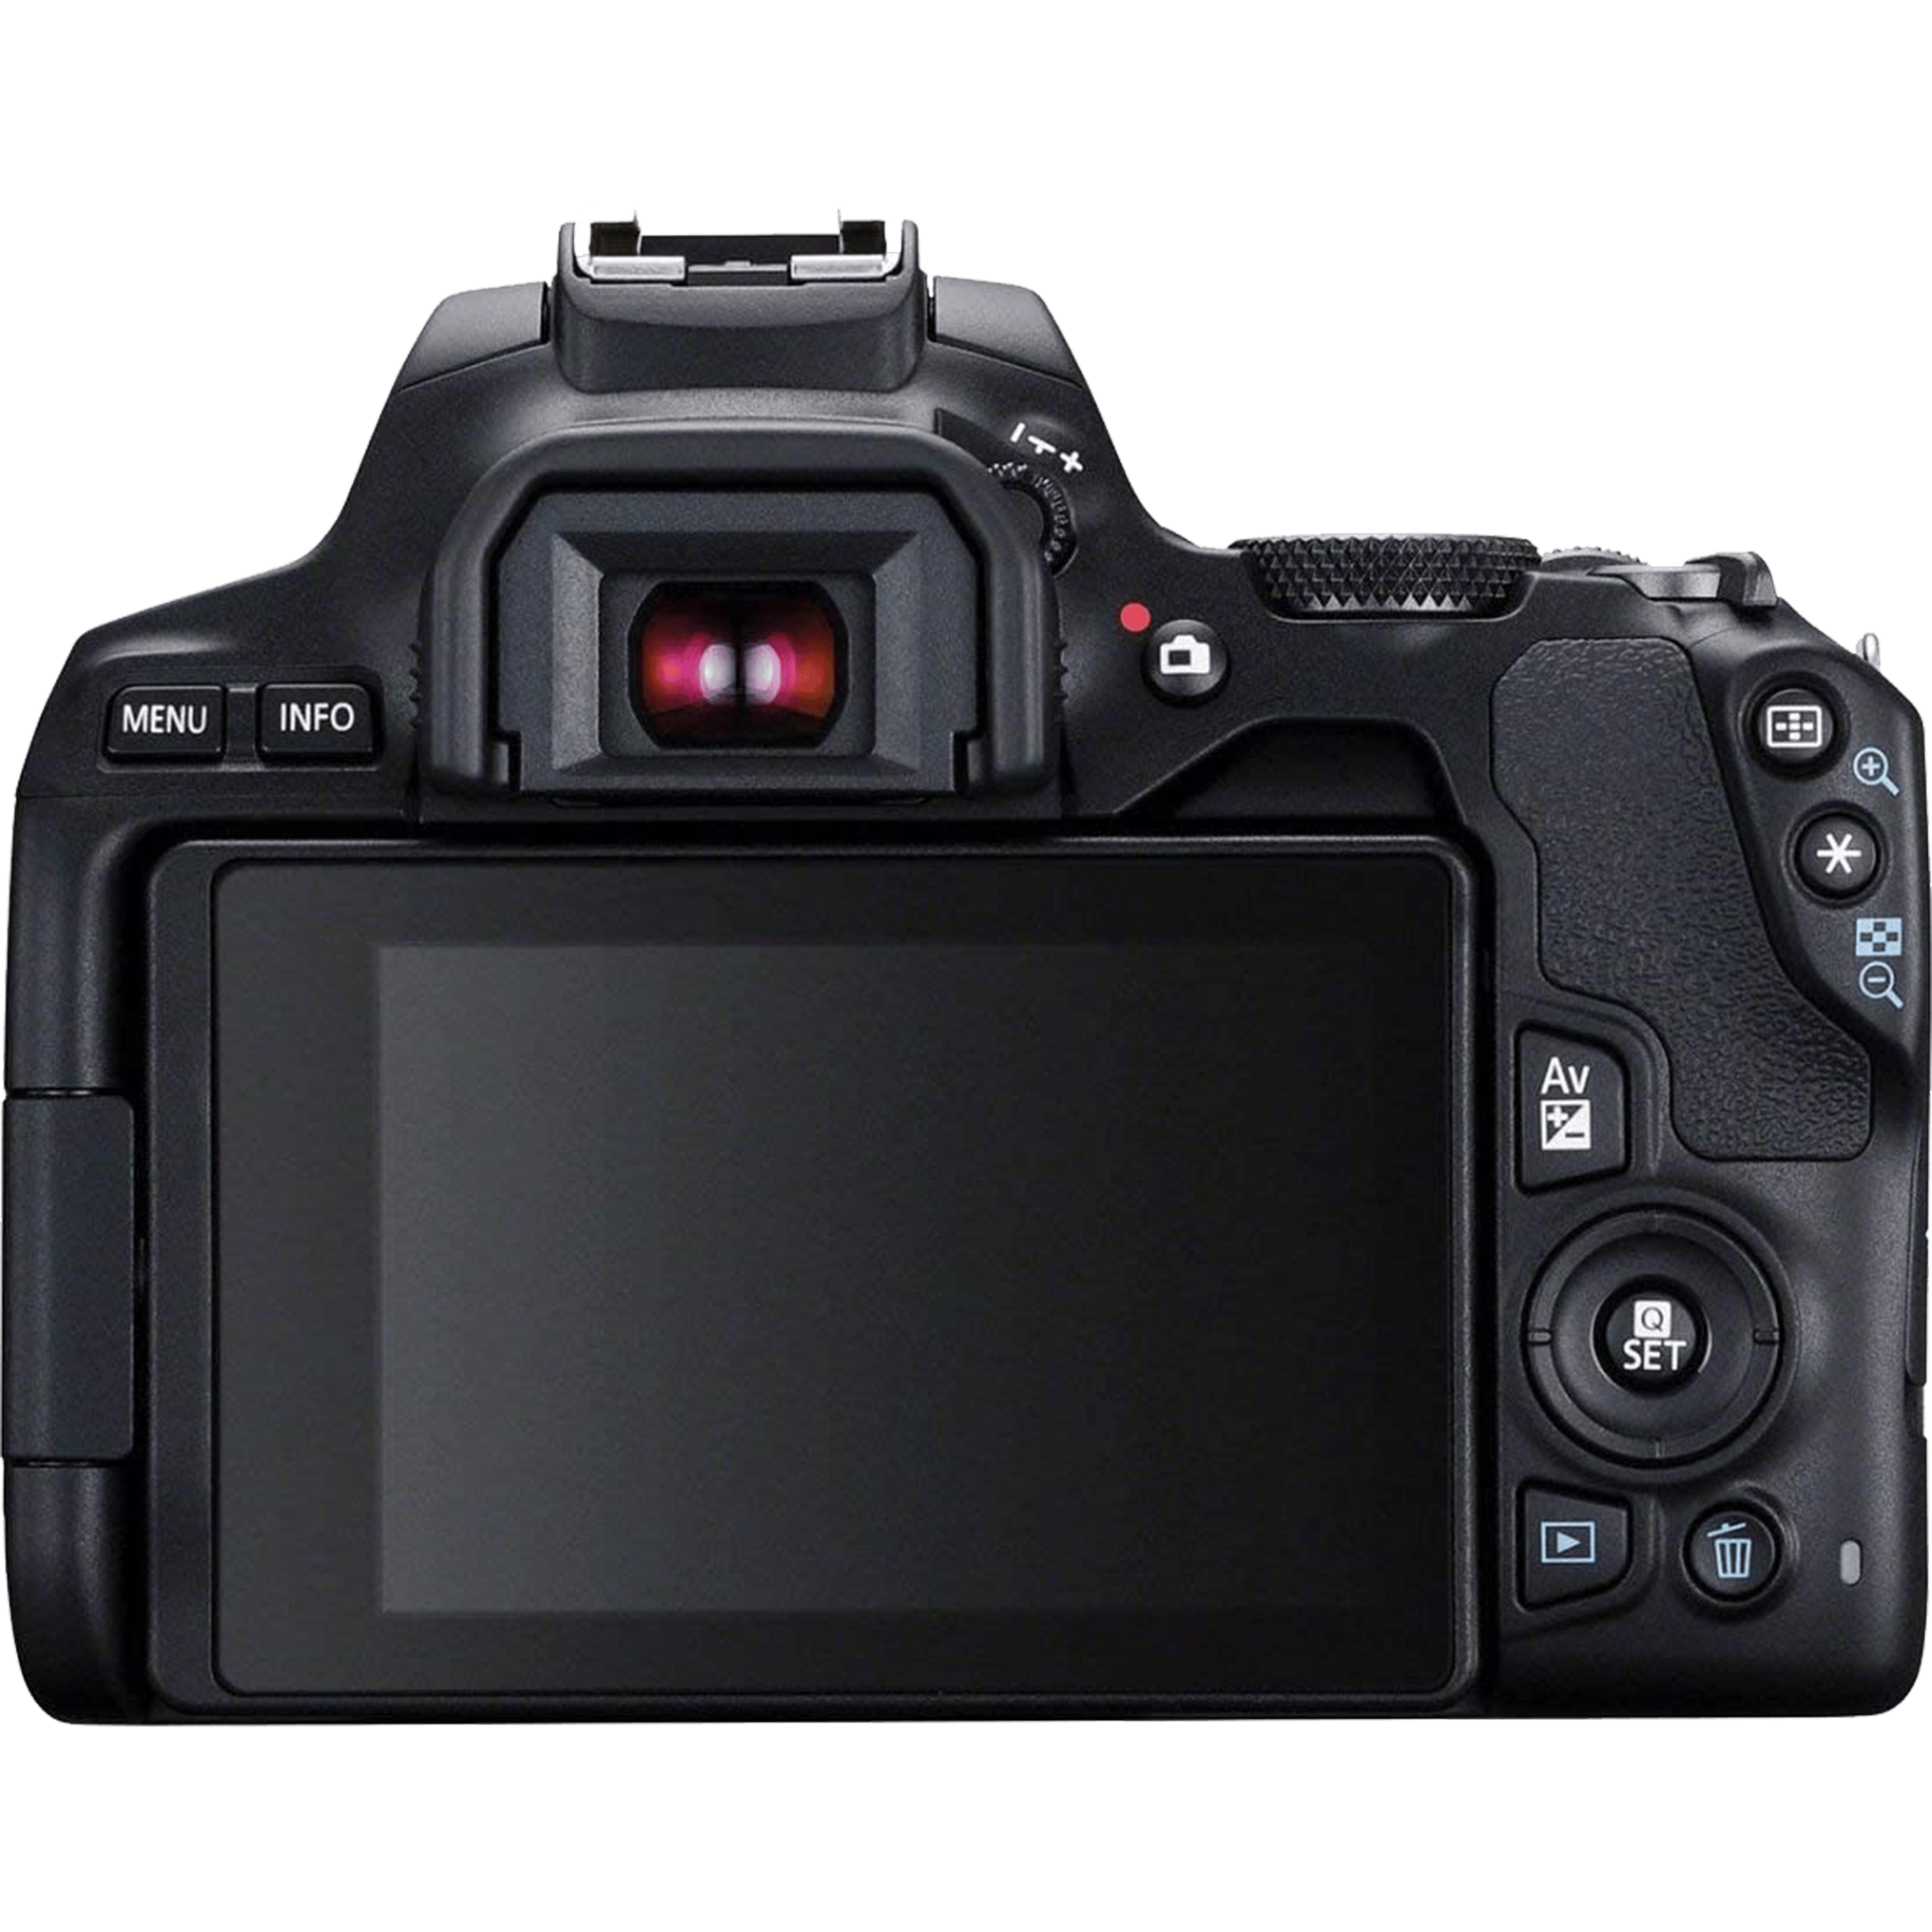 מצלמה רפלקס דיגיטלית הכוללת עדשה Canon EOS 250D DSLR 24.1MP EF-S 18-55mm f/4-5.6 DC III - צבע שחור שלוש שנות אחריות ע